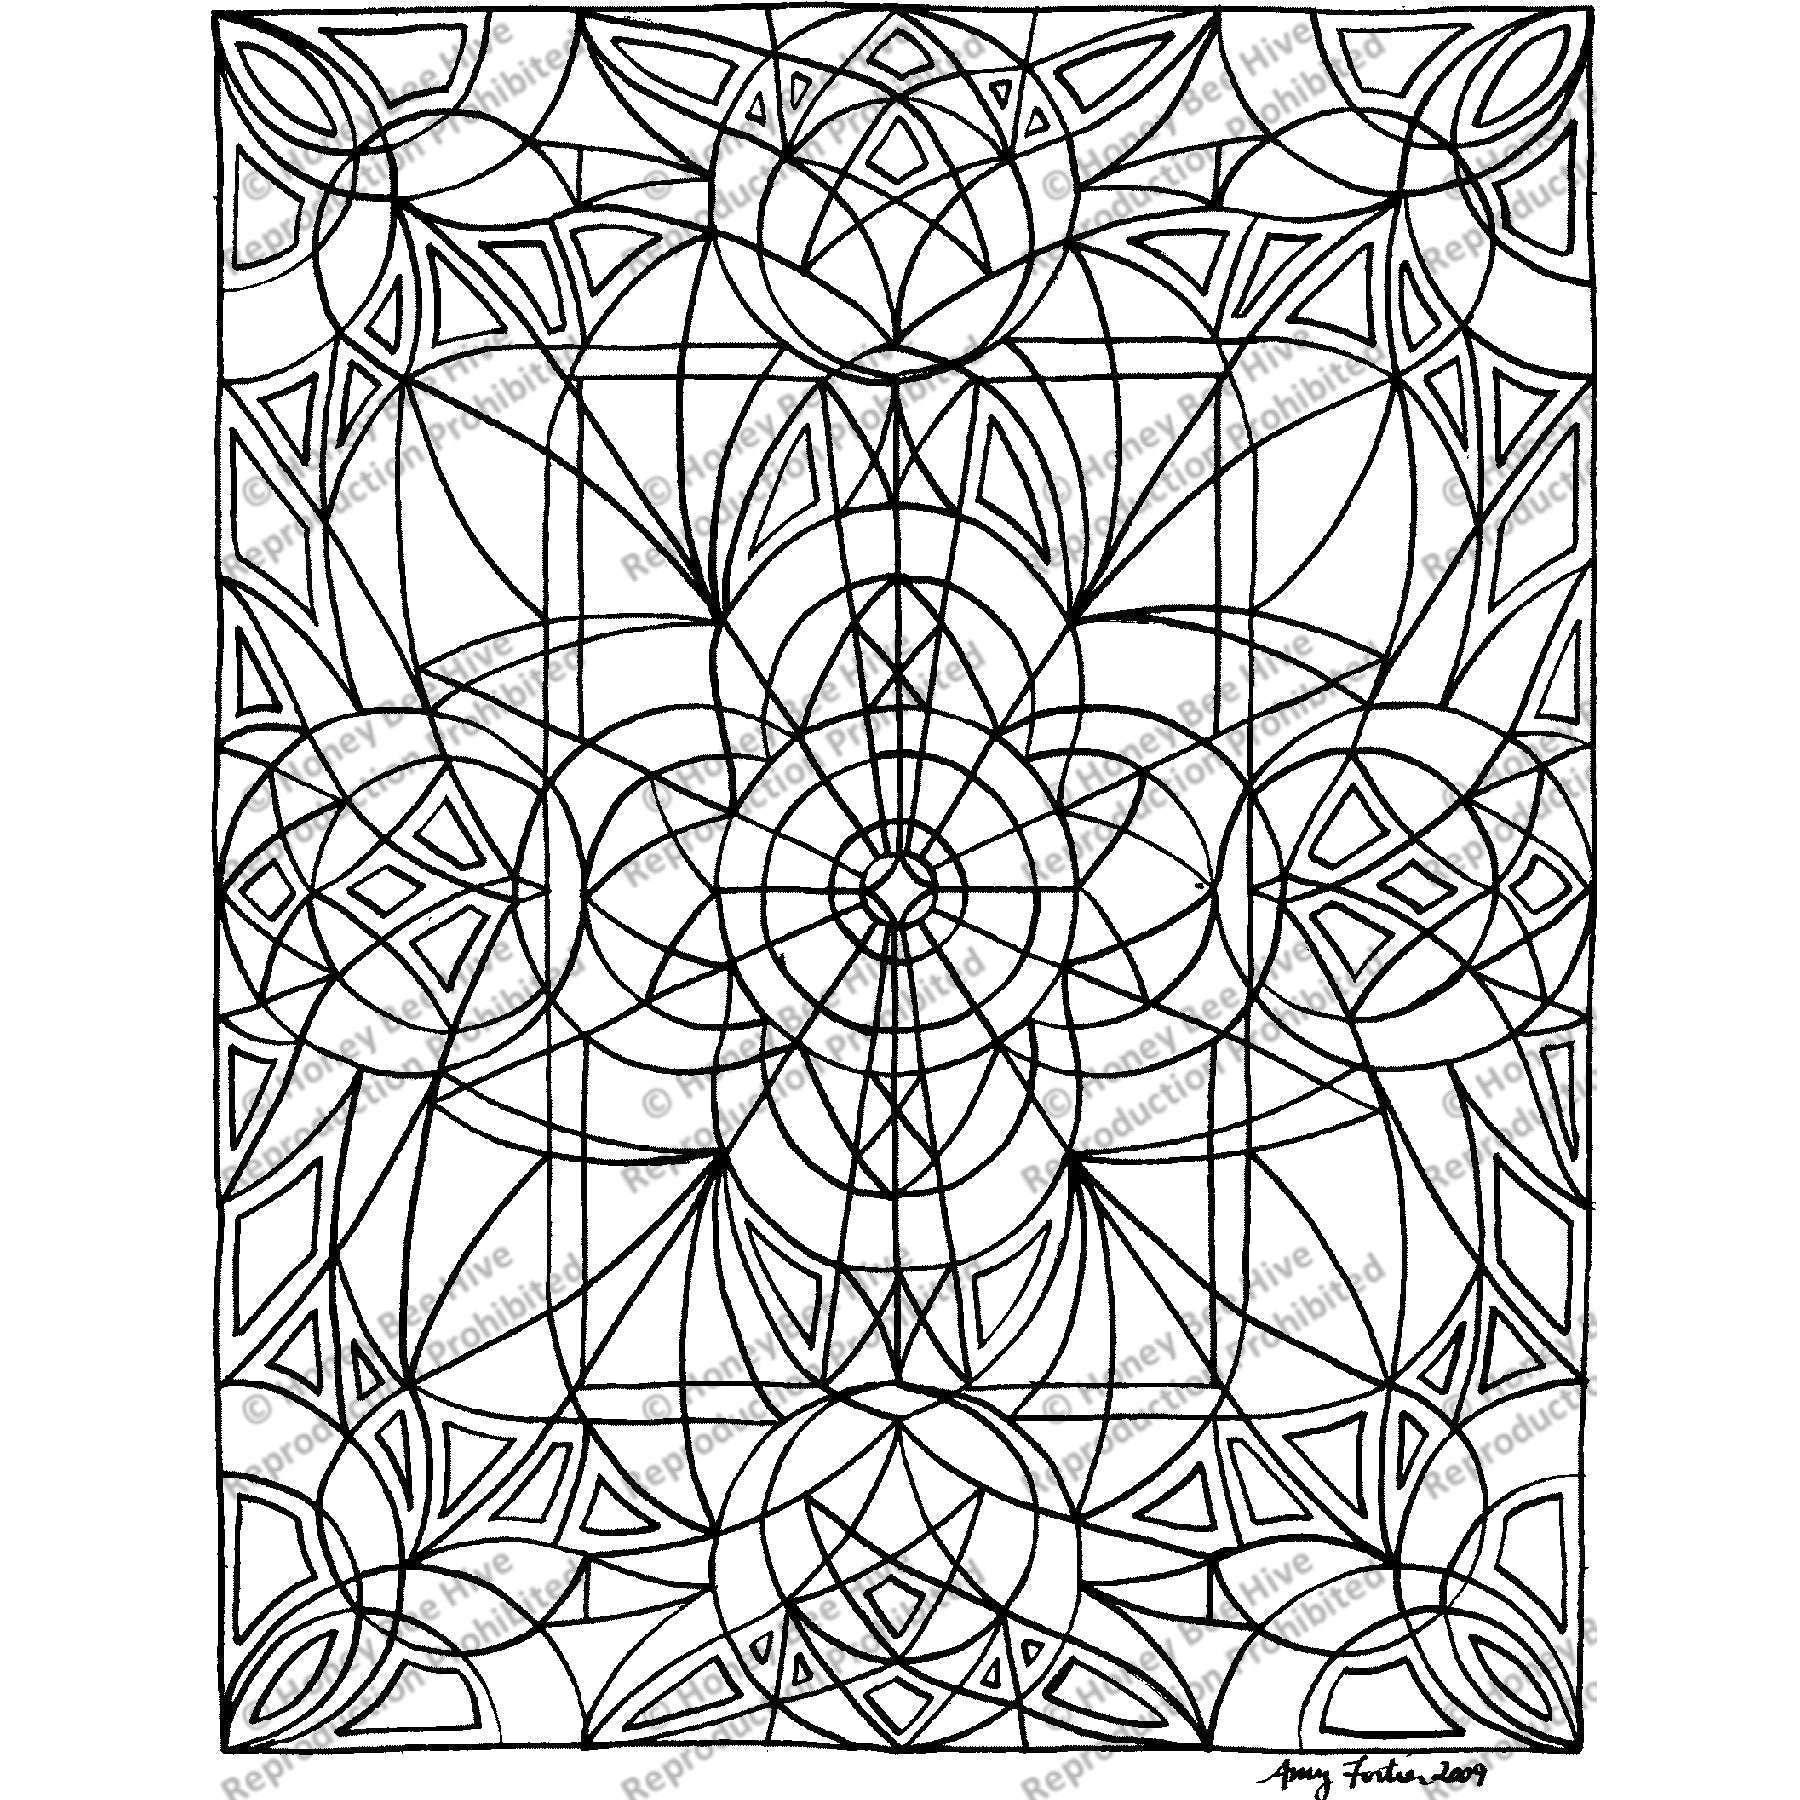 Azalea, rug hooking pattern